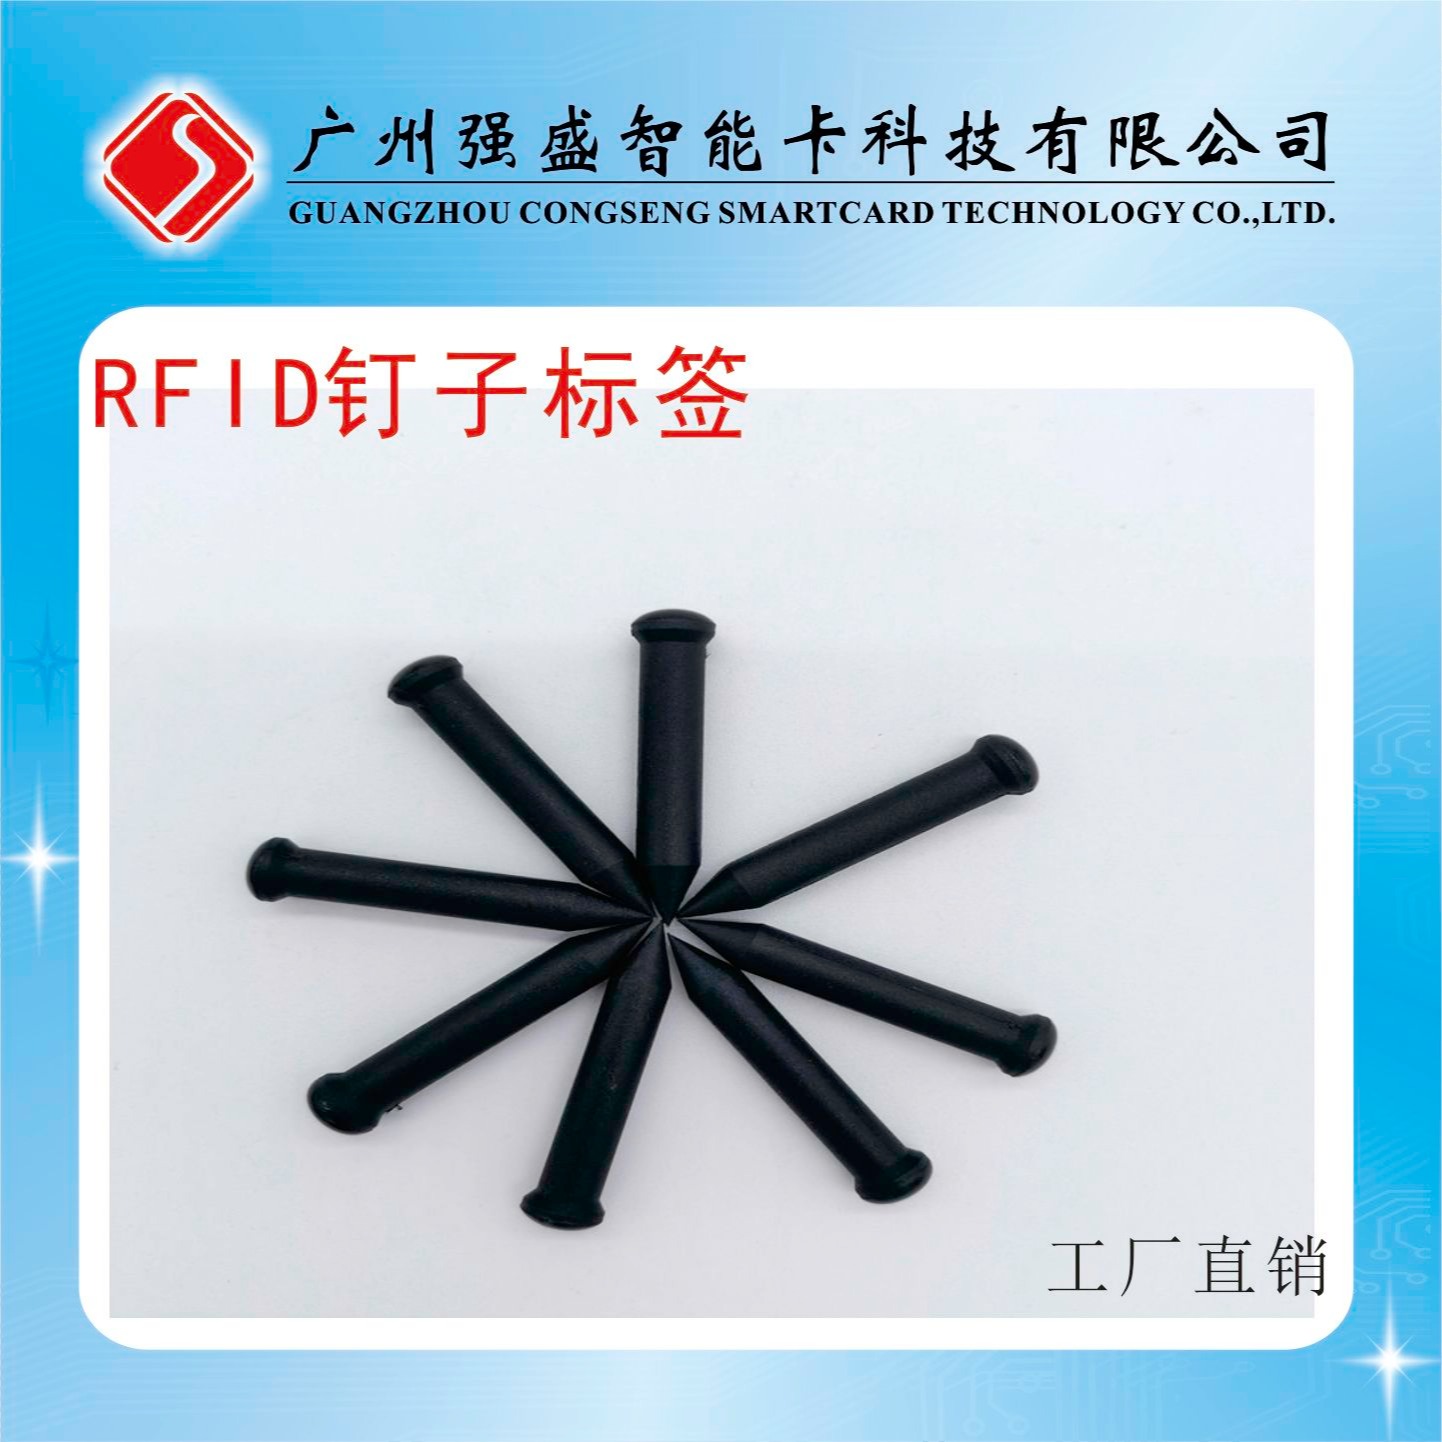 供应超高频RFID钉子标签、EM4305钉子形标签、ABS材料钉子标签价格QS-0113图片